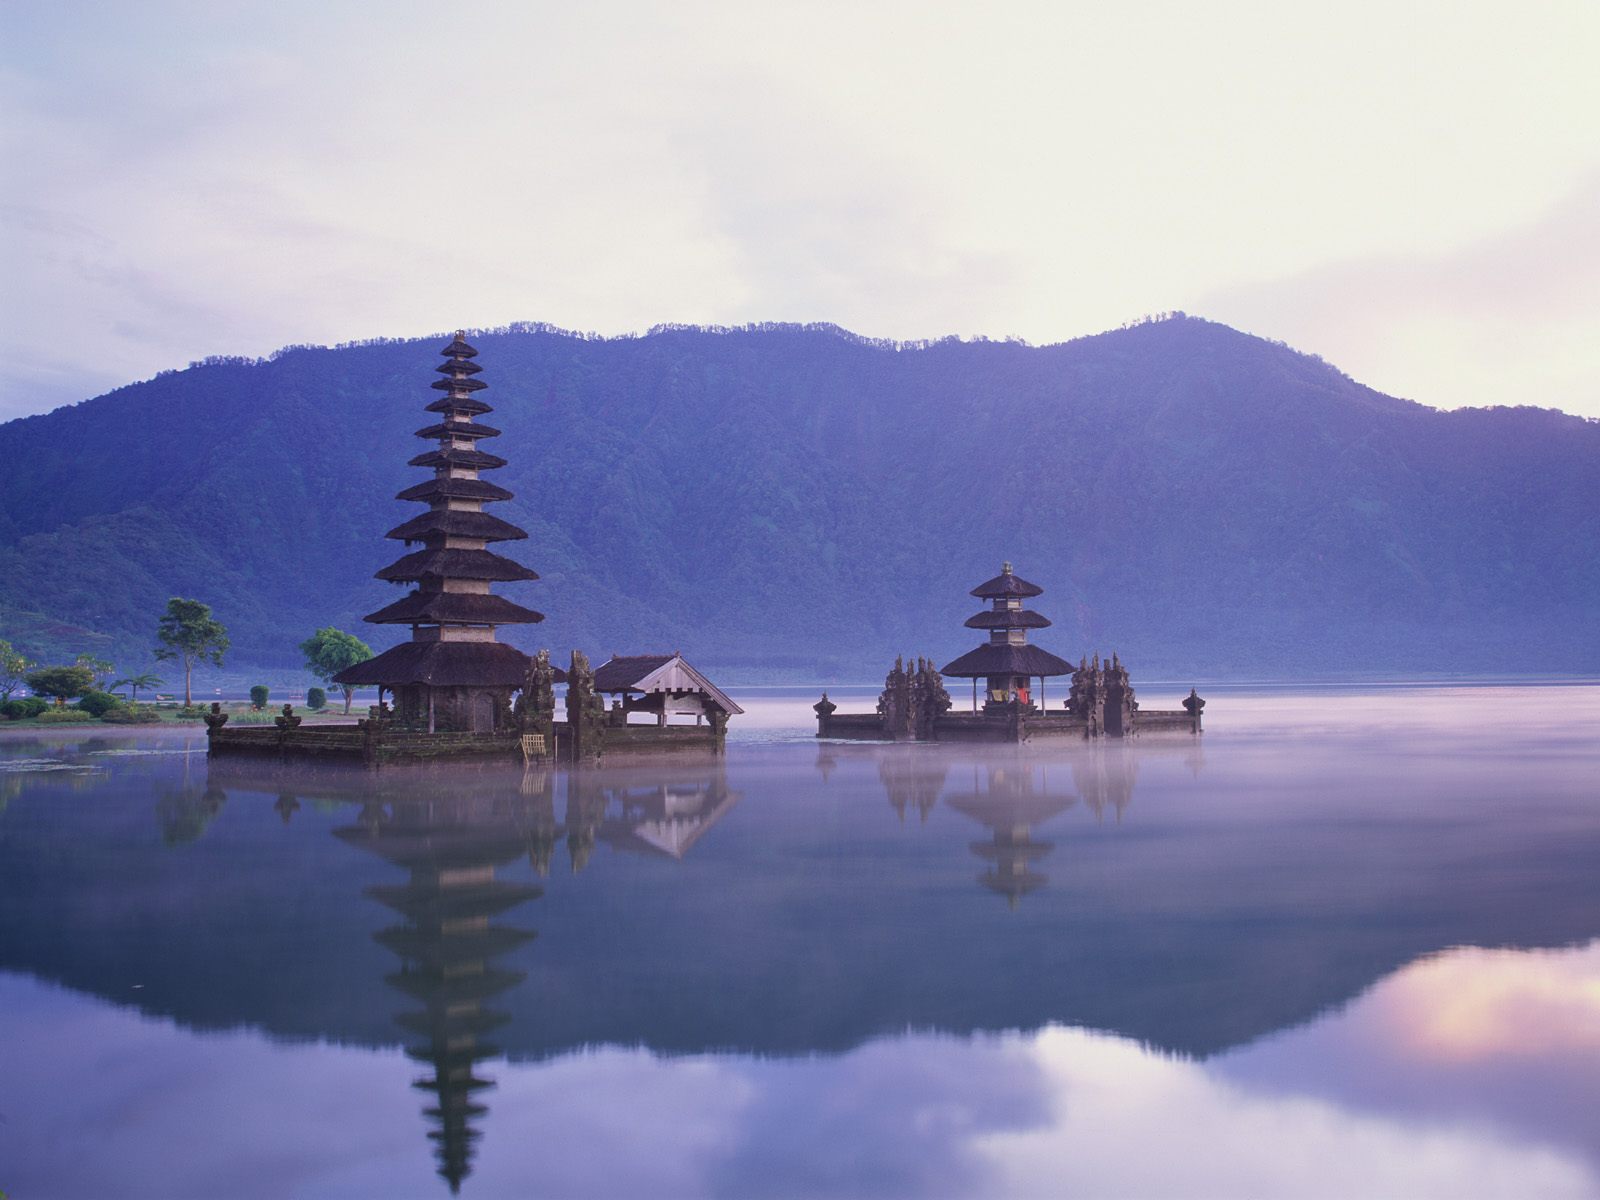 [Pura+Ulun+Danu+on+Lake+Bratan+Bali+Indonesia.jpg]